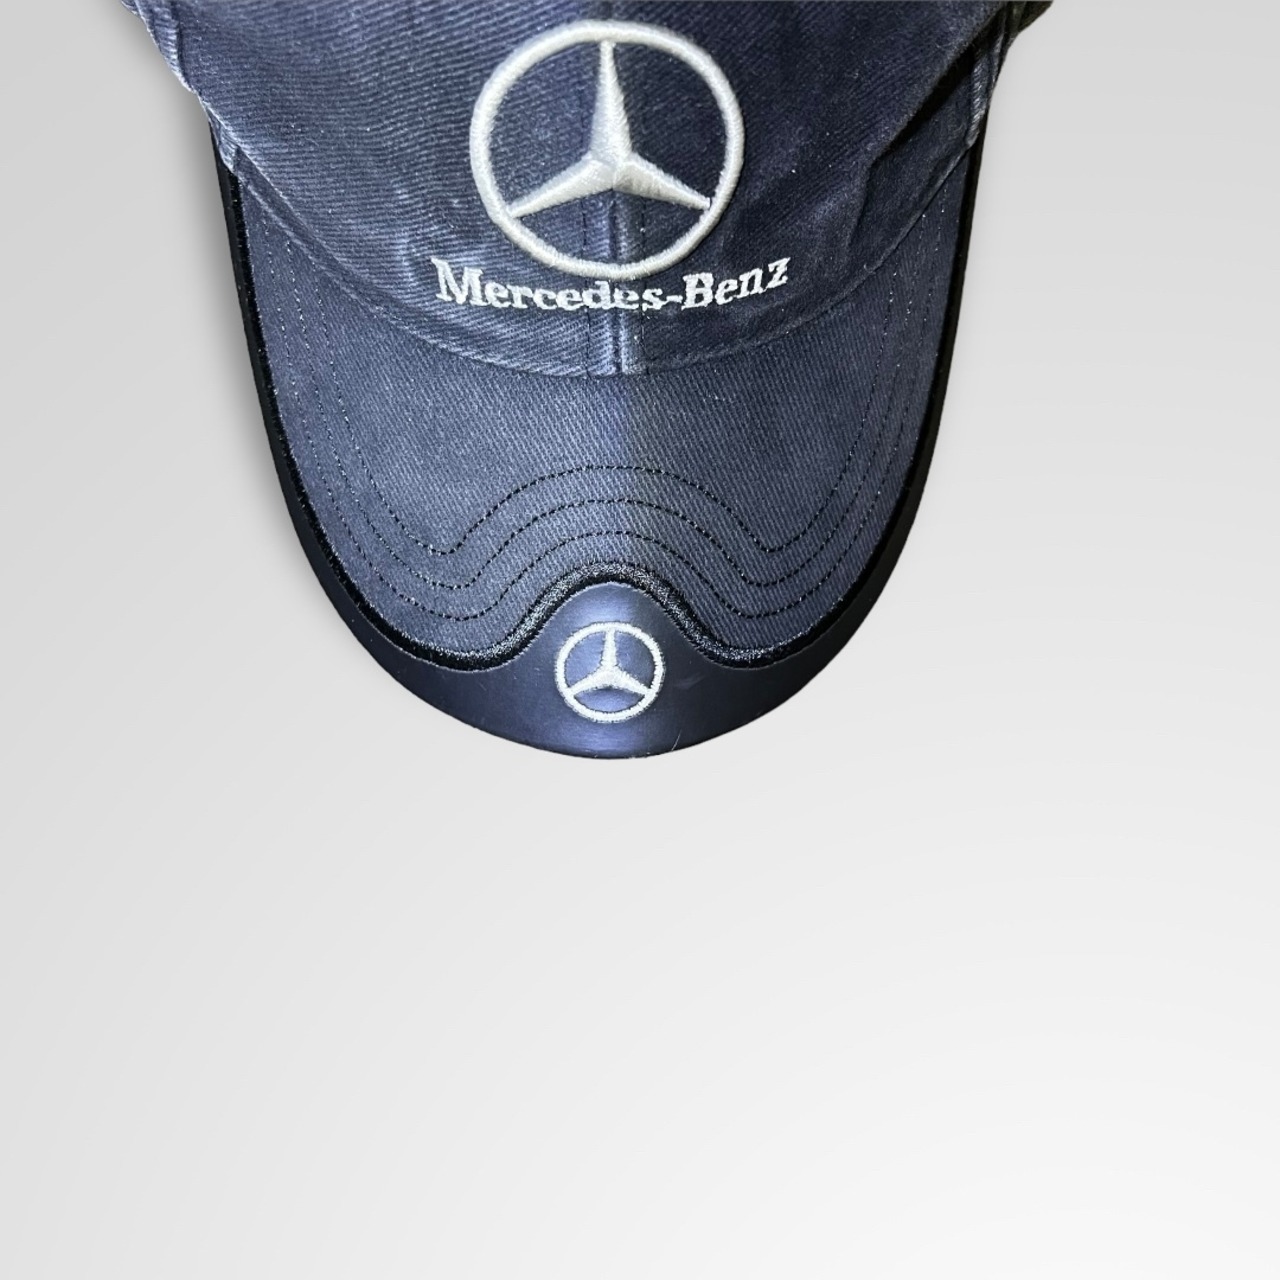 Mercedes-Benz Promo Cap